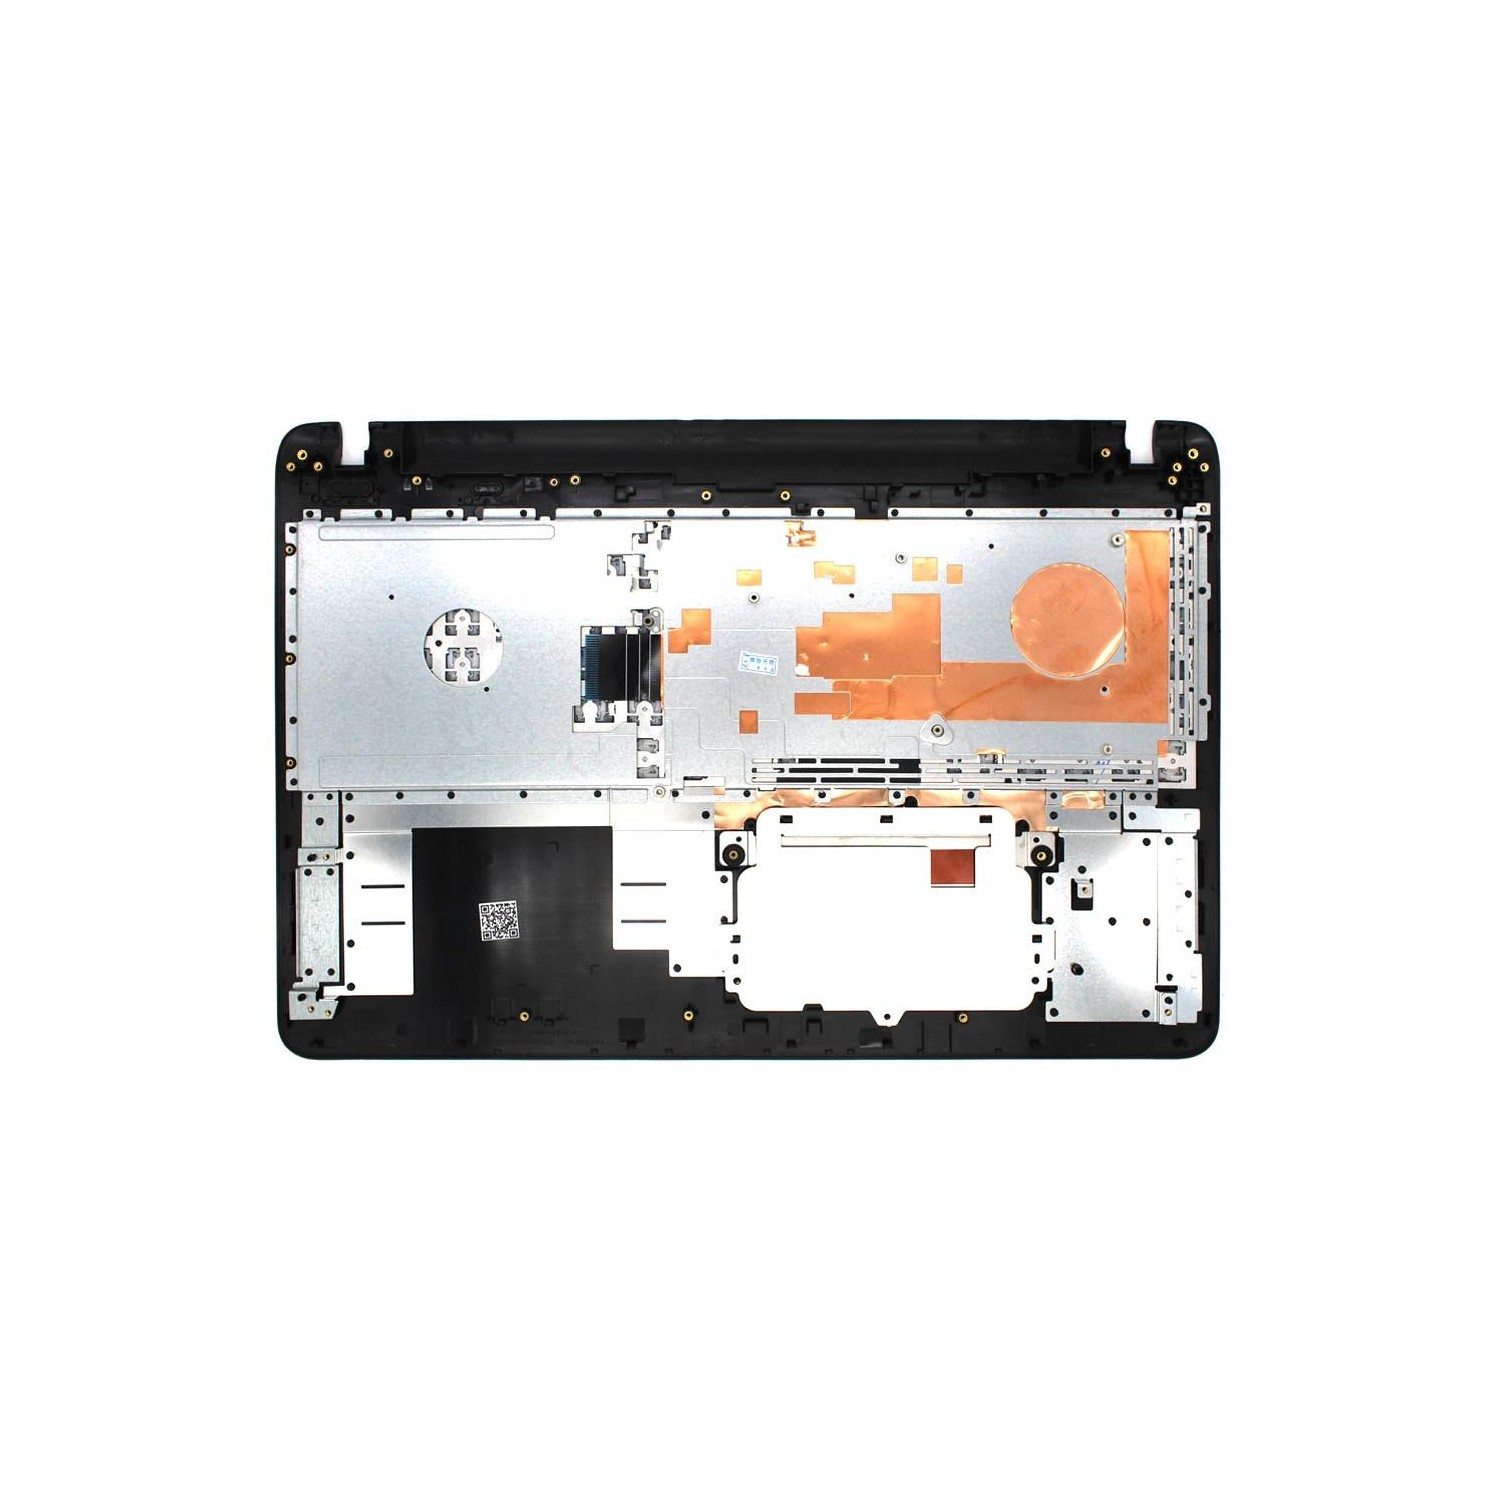 Carcasa / Funda QDOS Ozone para iPhone 6 Plus, iPhone 6s Plus Negro